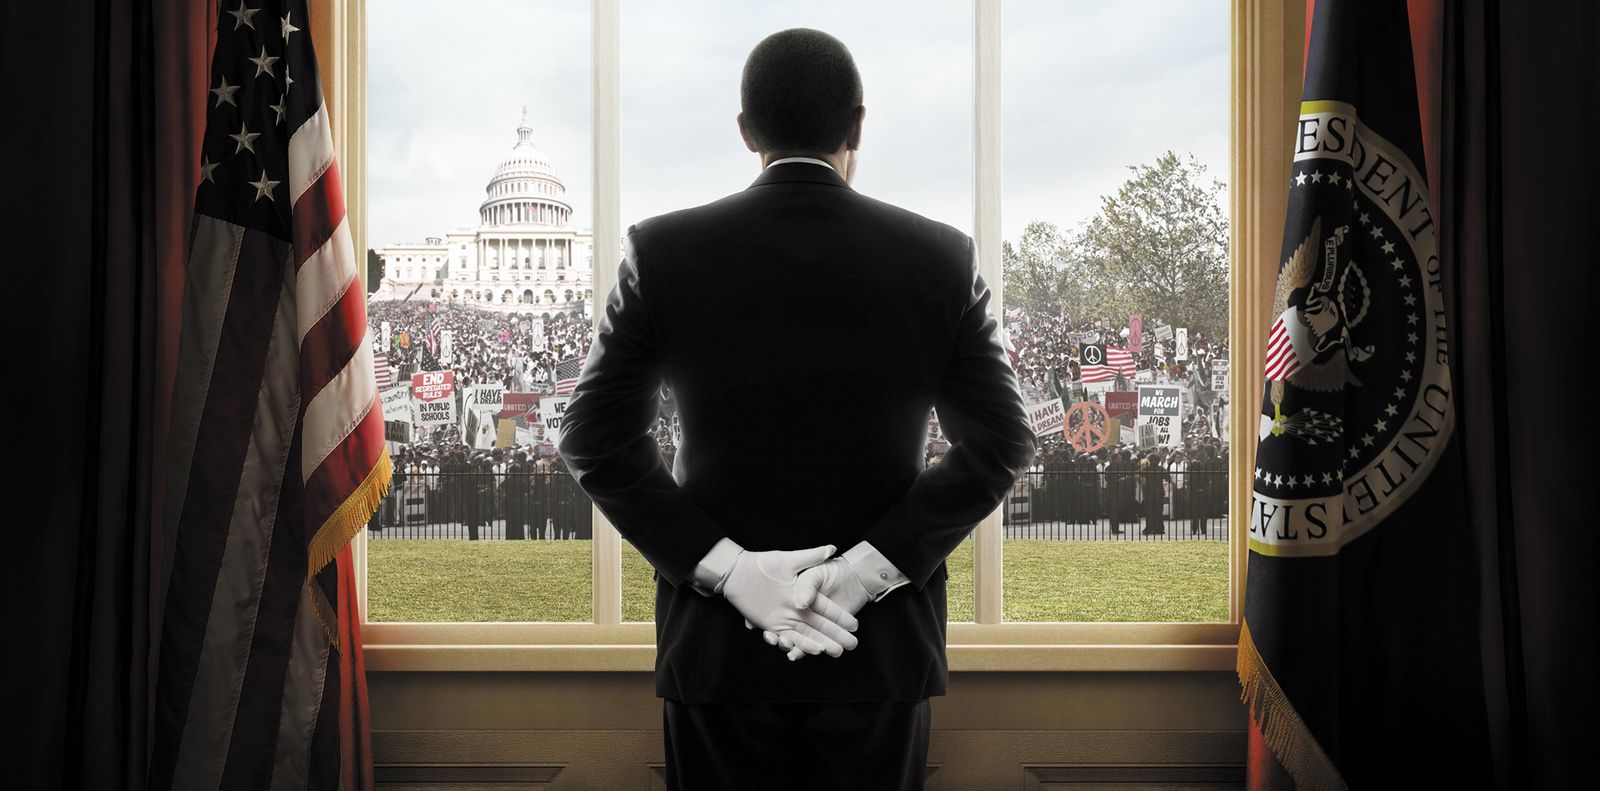 Σκηνή μέσα στον Λευκό Οίκο απο την ταινία Ο Μπάτλερ (2013)